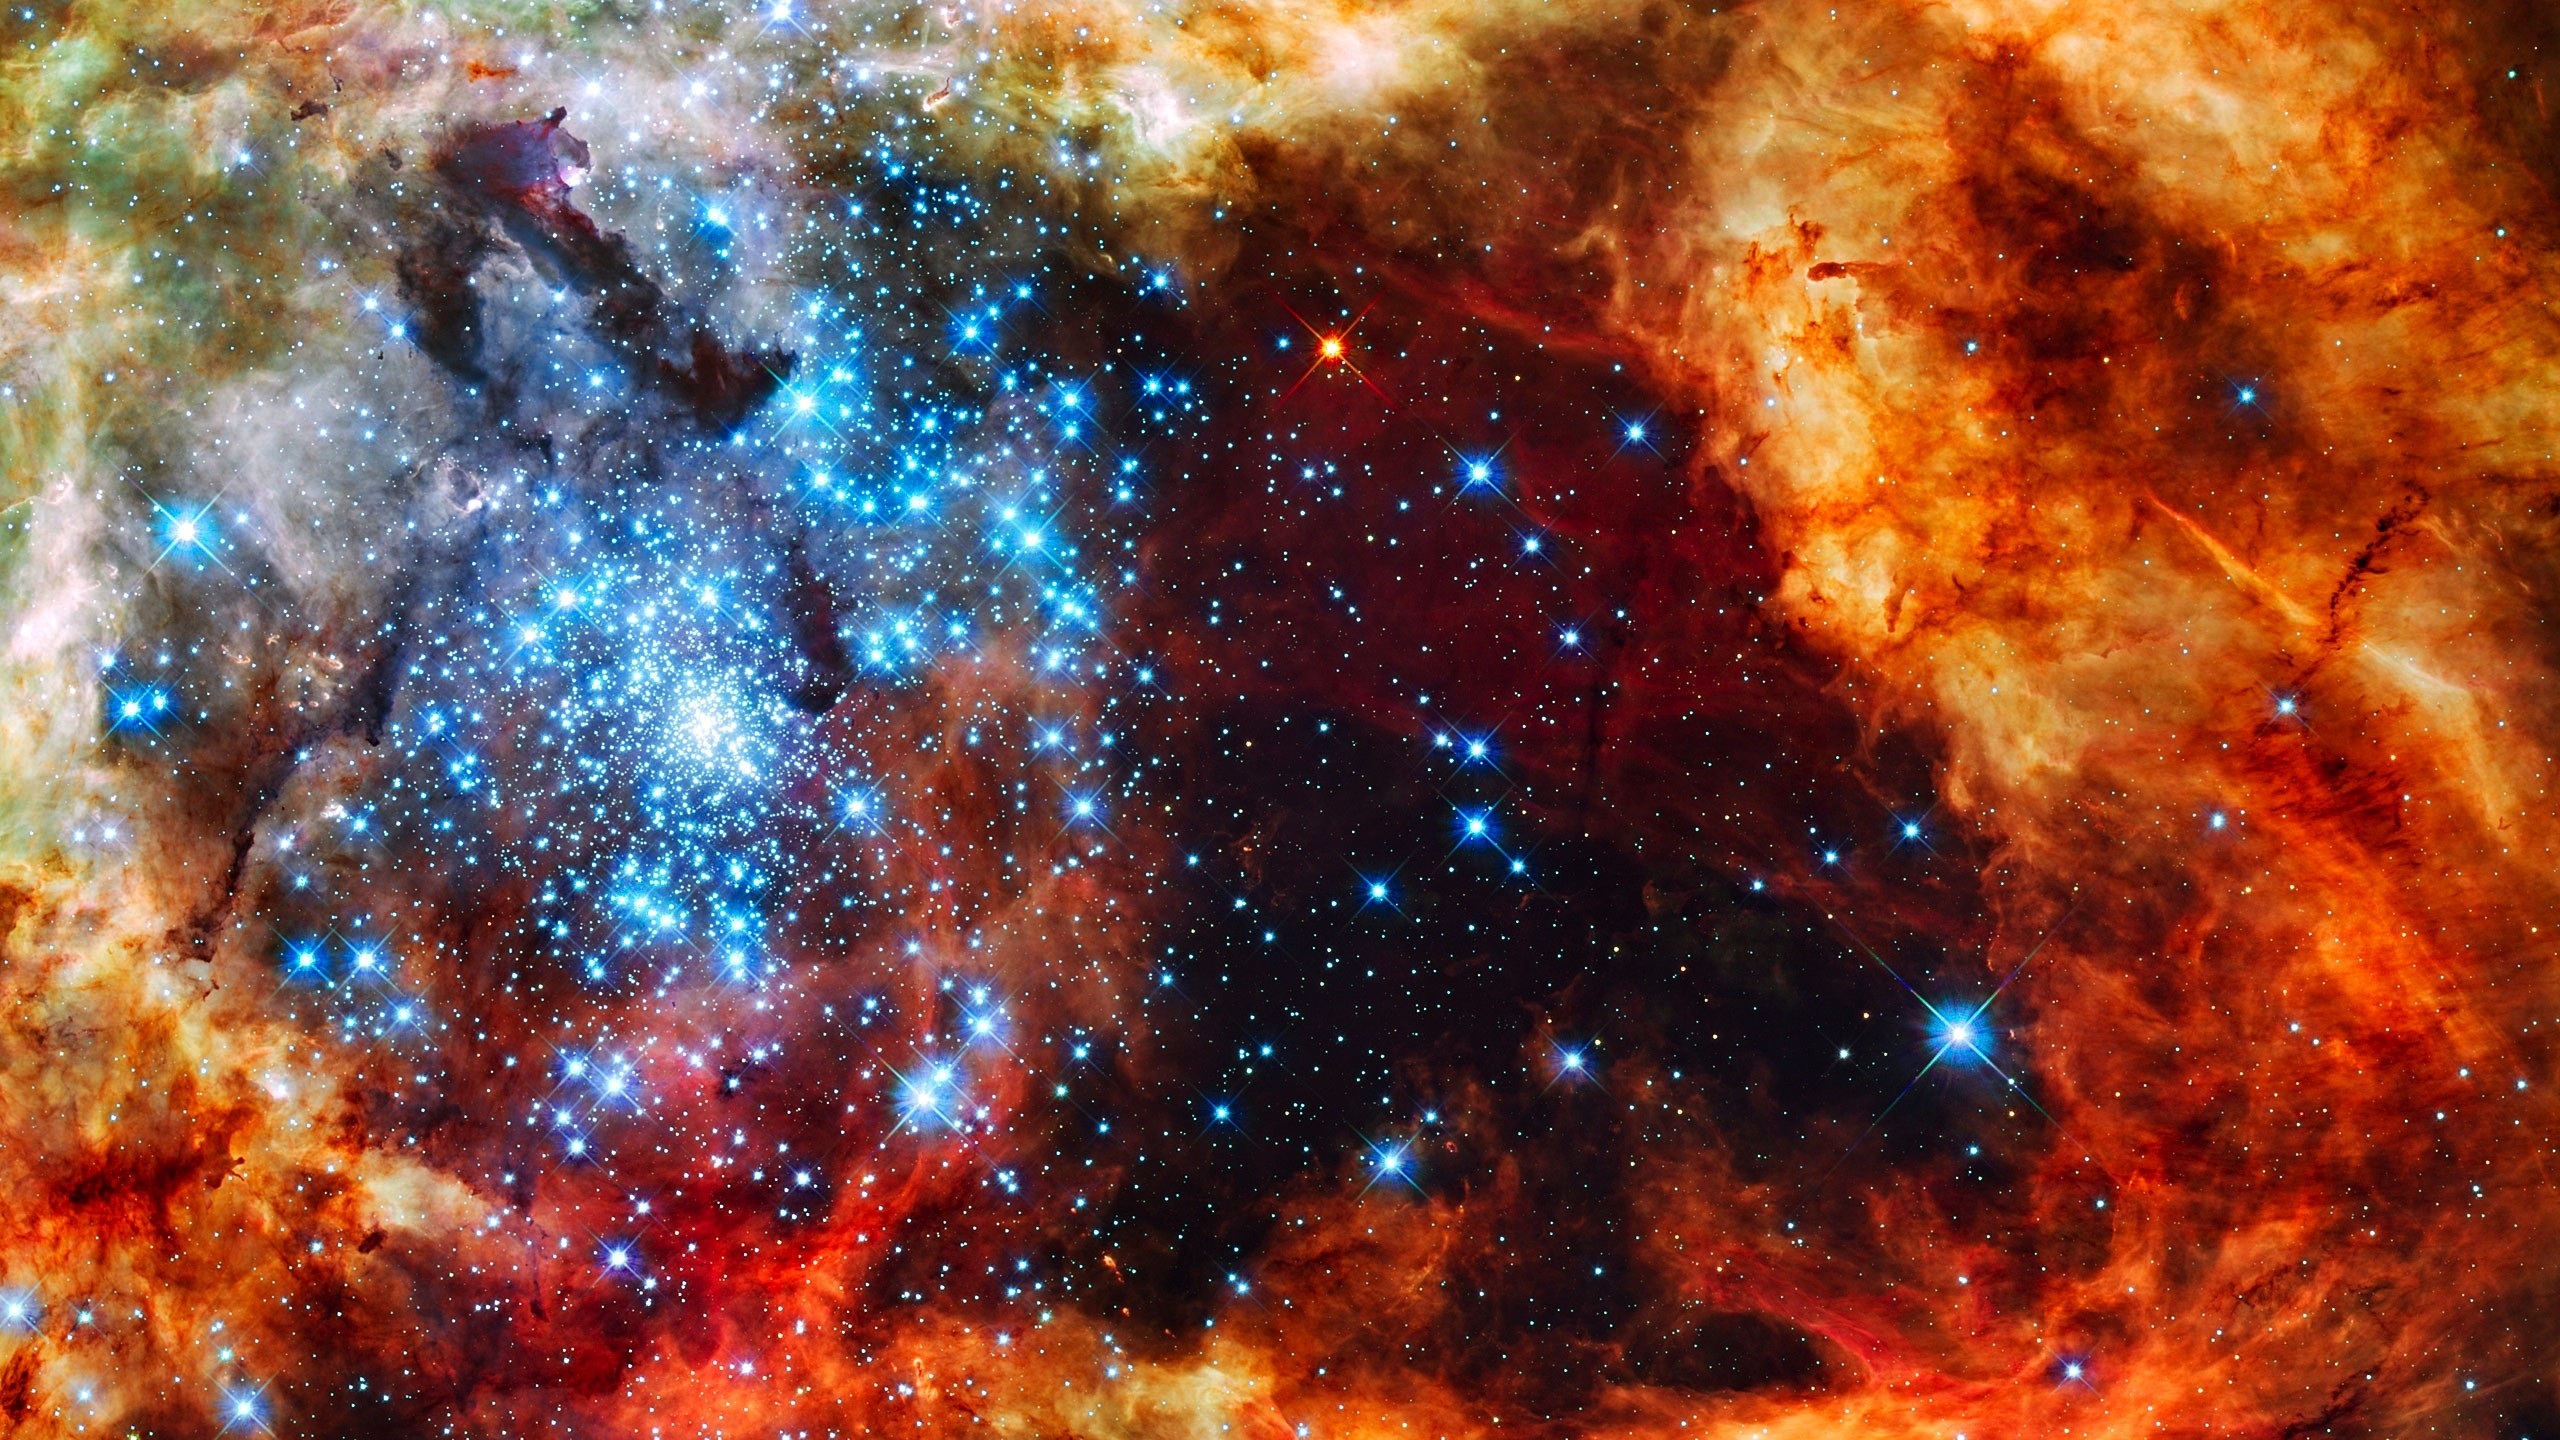 hochauflösendes hintergrundbild 2560x1440,nebel,astronomisches objekt,weltraum,universum,platz